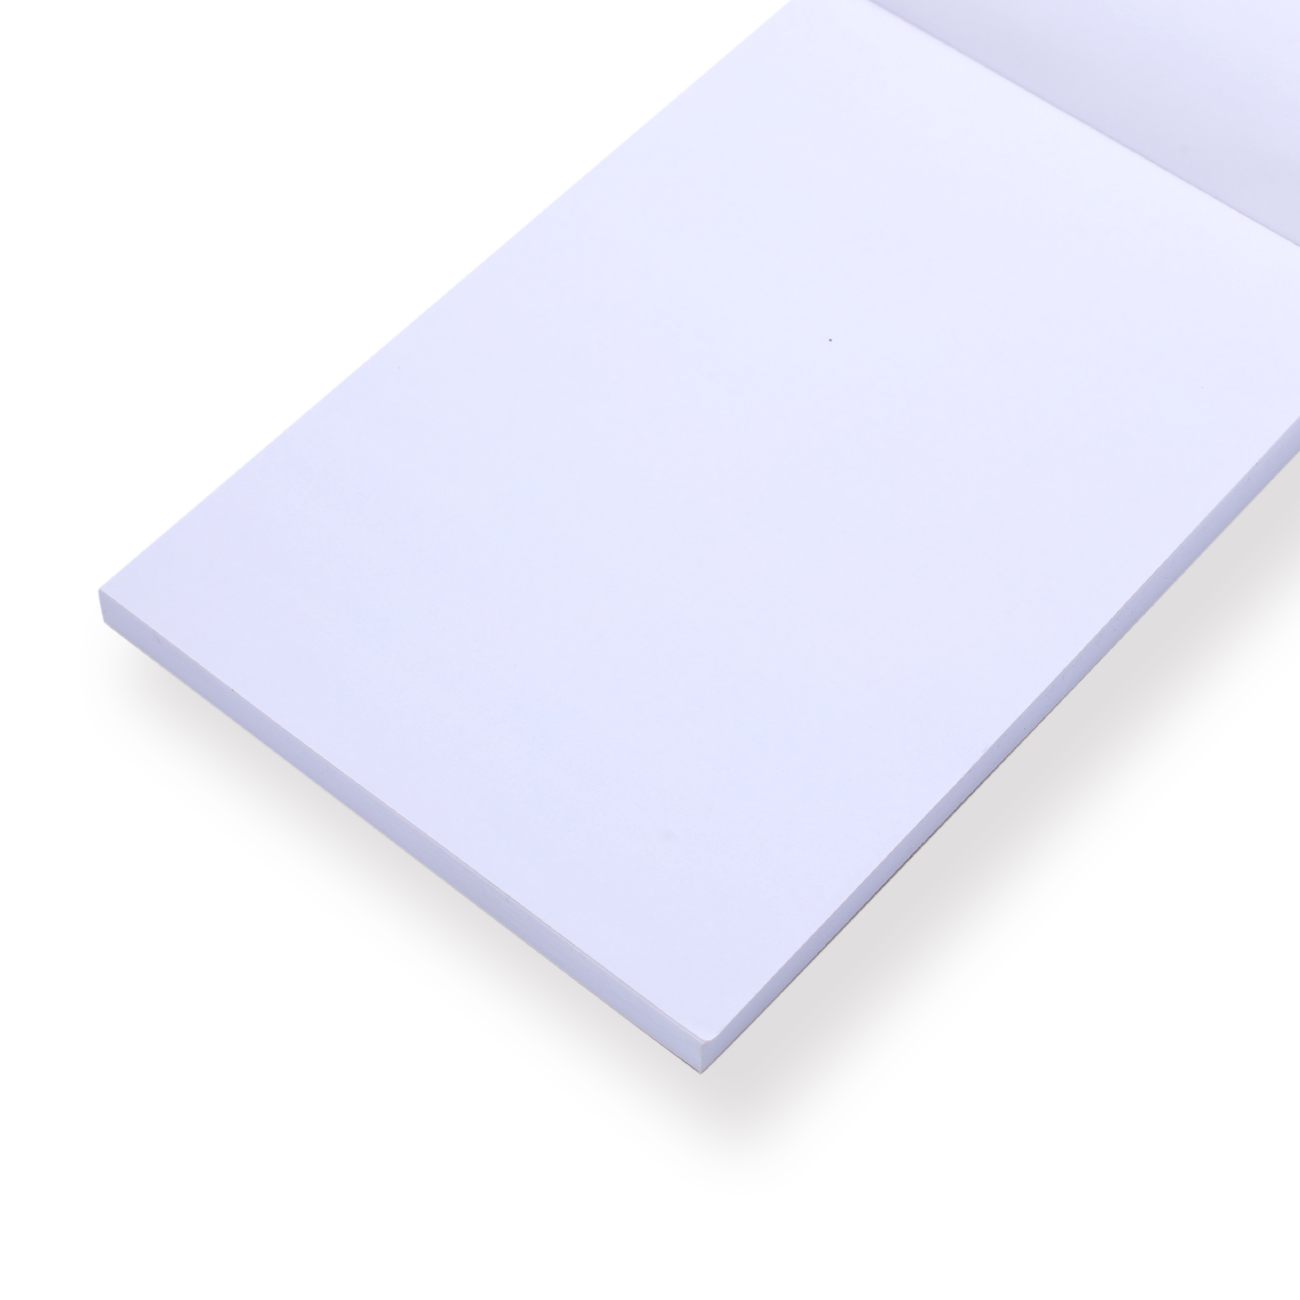 Kokuyo Draft NoteBook - A6 - Stationery Pal